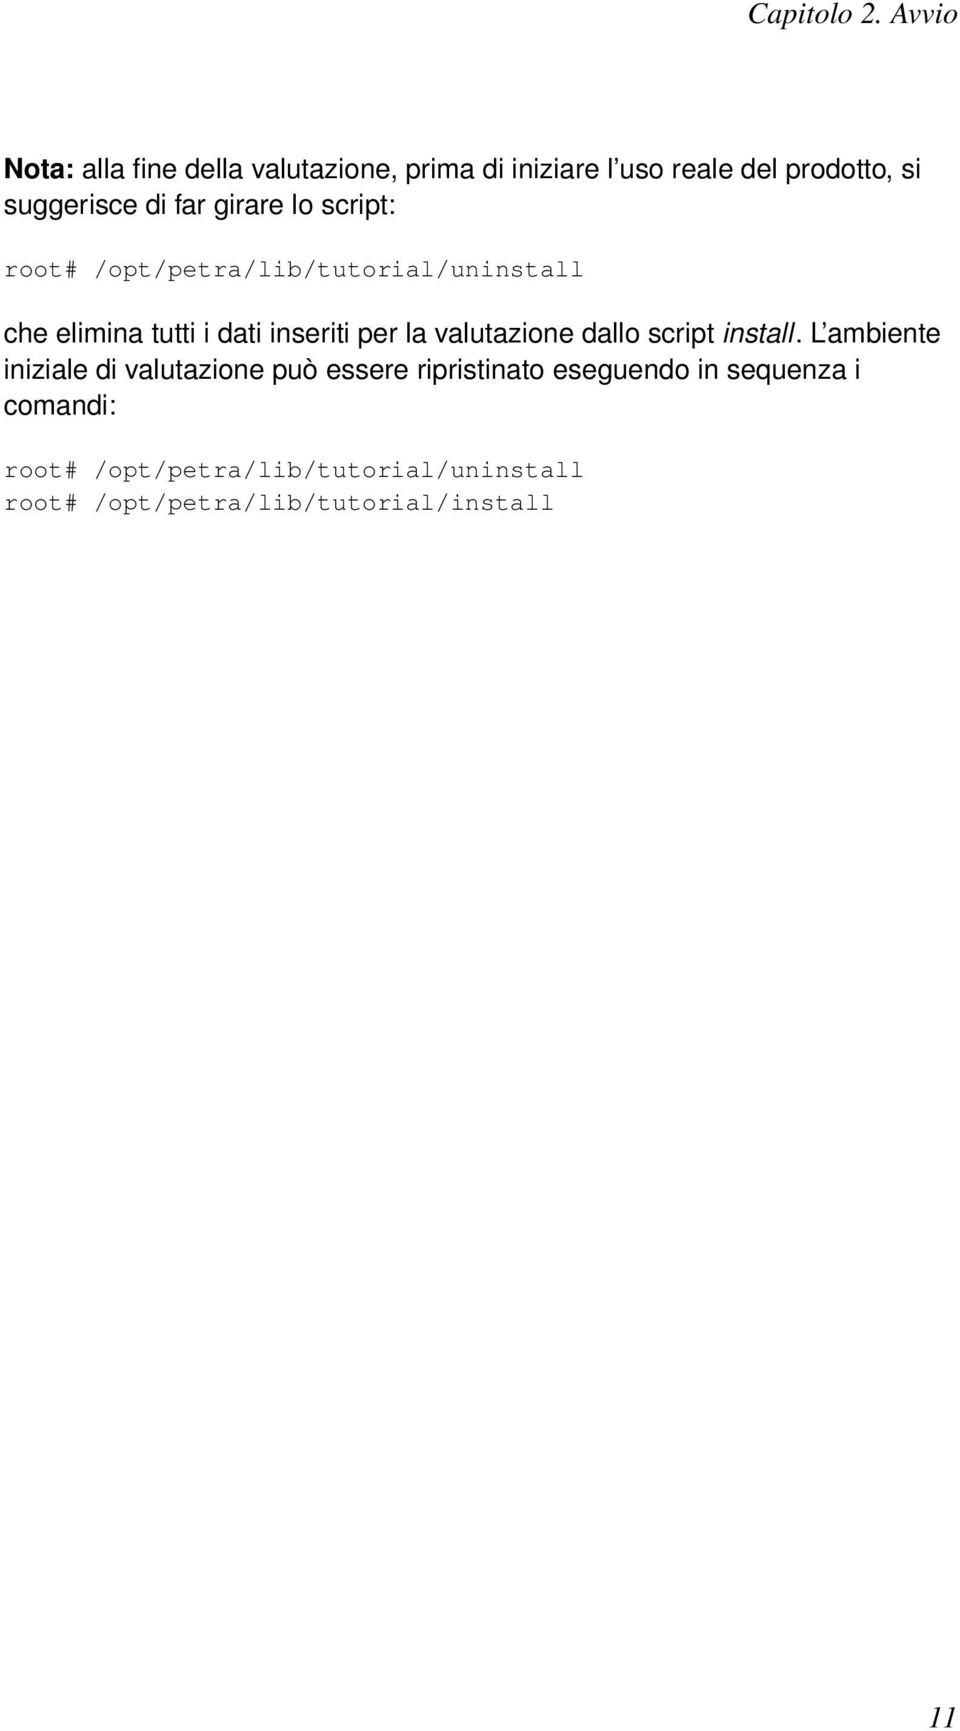 girare lo script: root# /opt/petra/lib/tutorial/uninstall che elimina tutti i dati inseriti per la